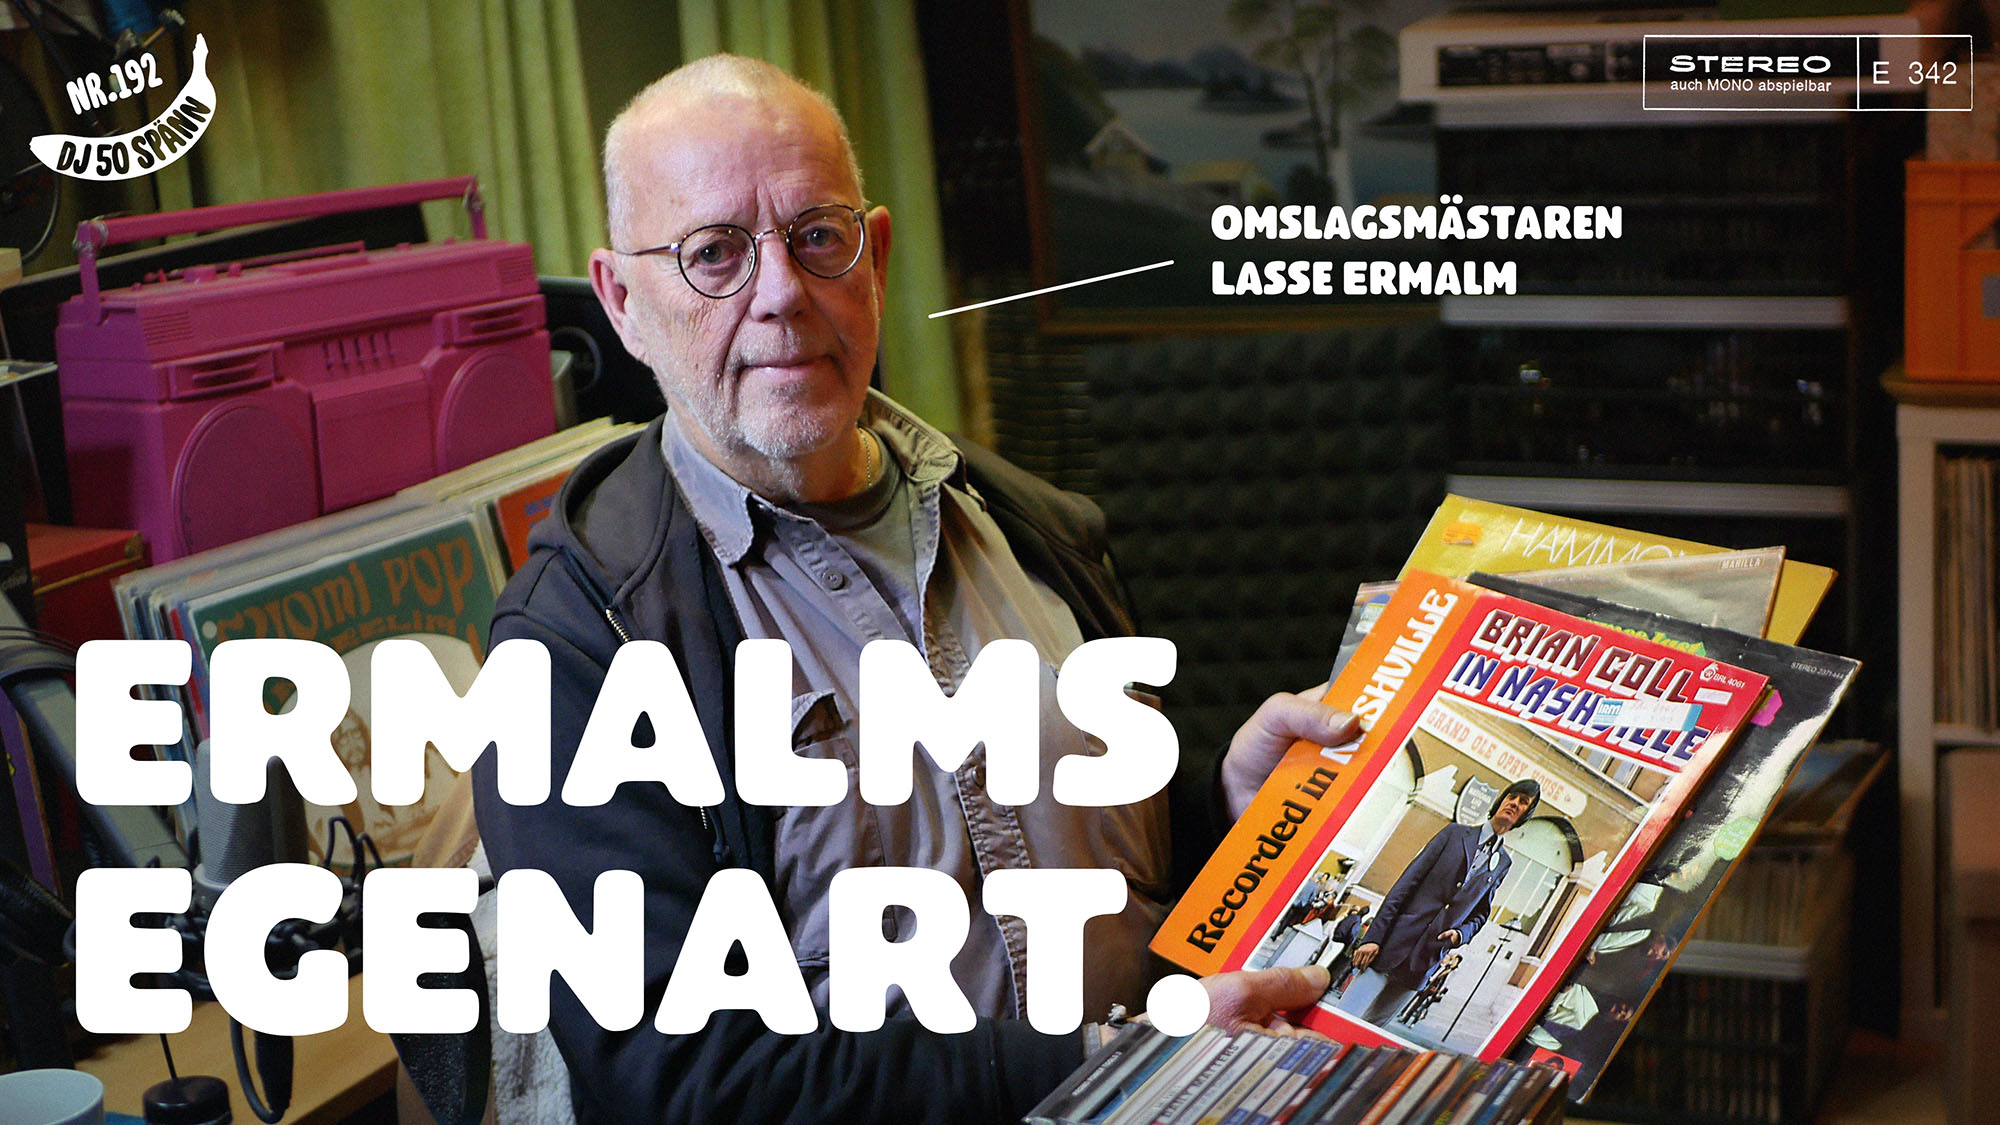 DJ50:- nr 192: Lasse Ermalm och hans egenart